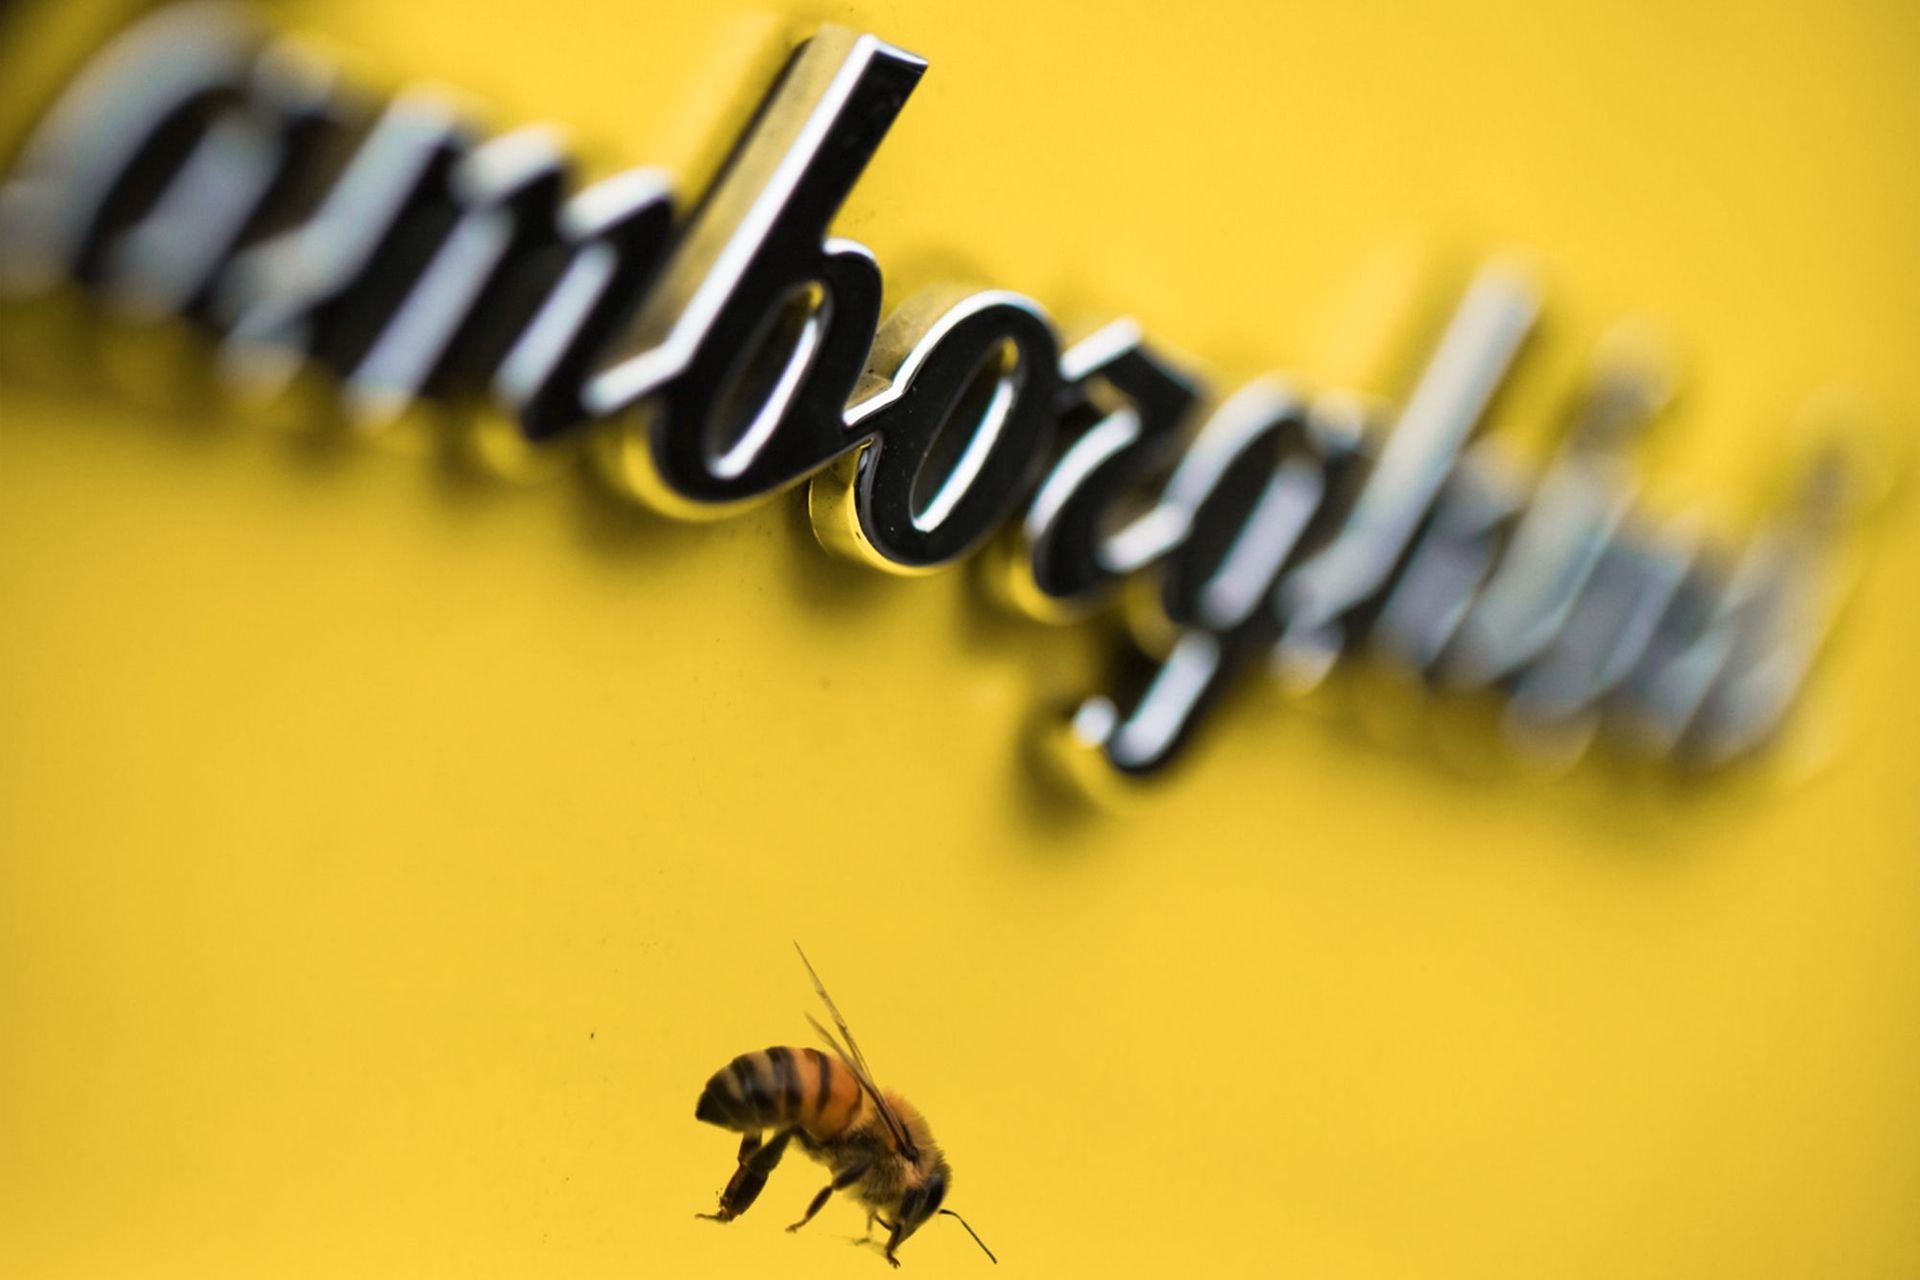 ფუტკარი ლამბორჯინის მიერ დამზადებული სუპერმანქანებისთვის დამახასიათებელი სტილიზებული დამწერლობის გვერდით